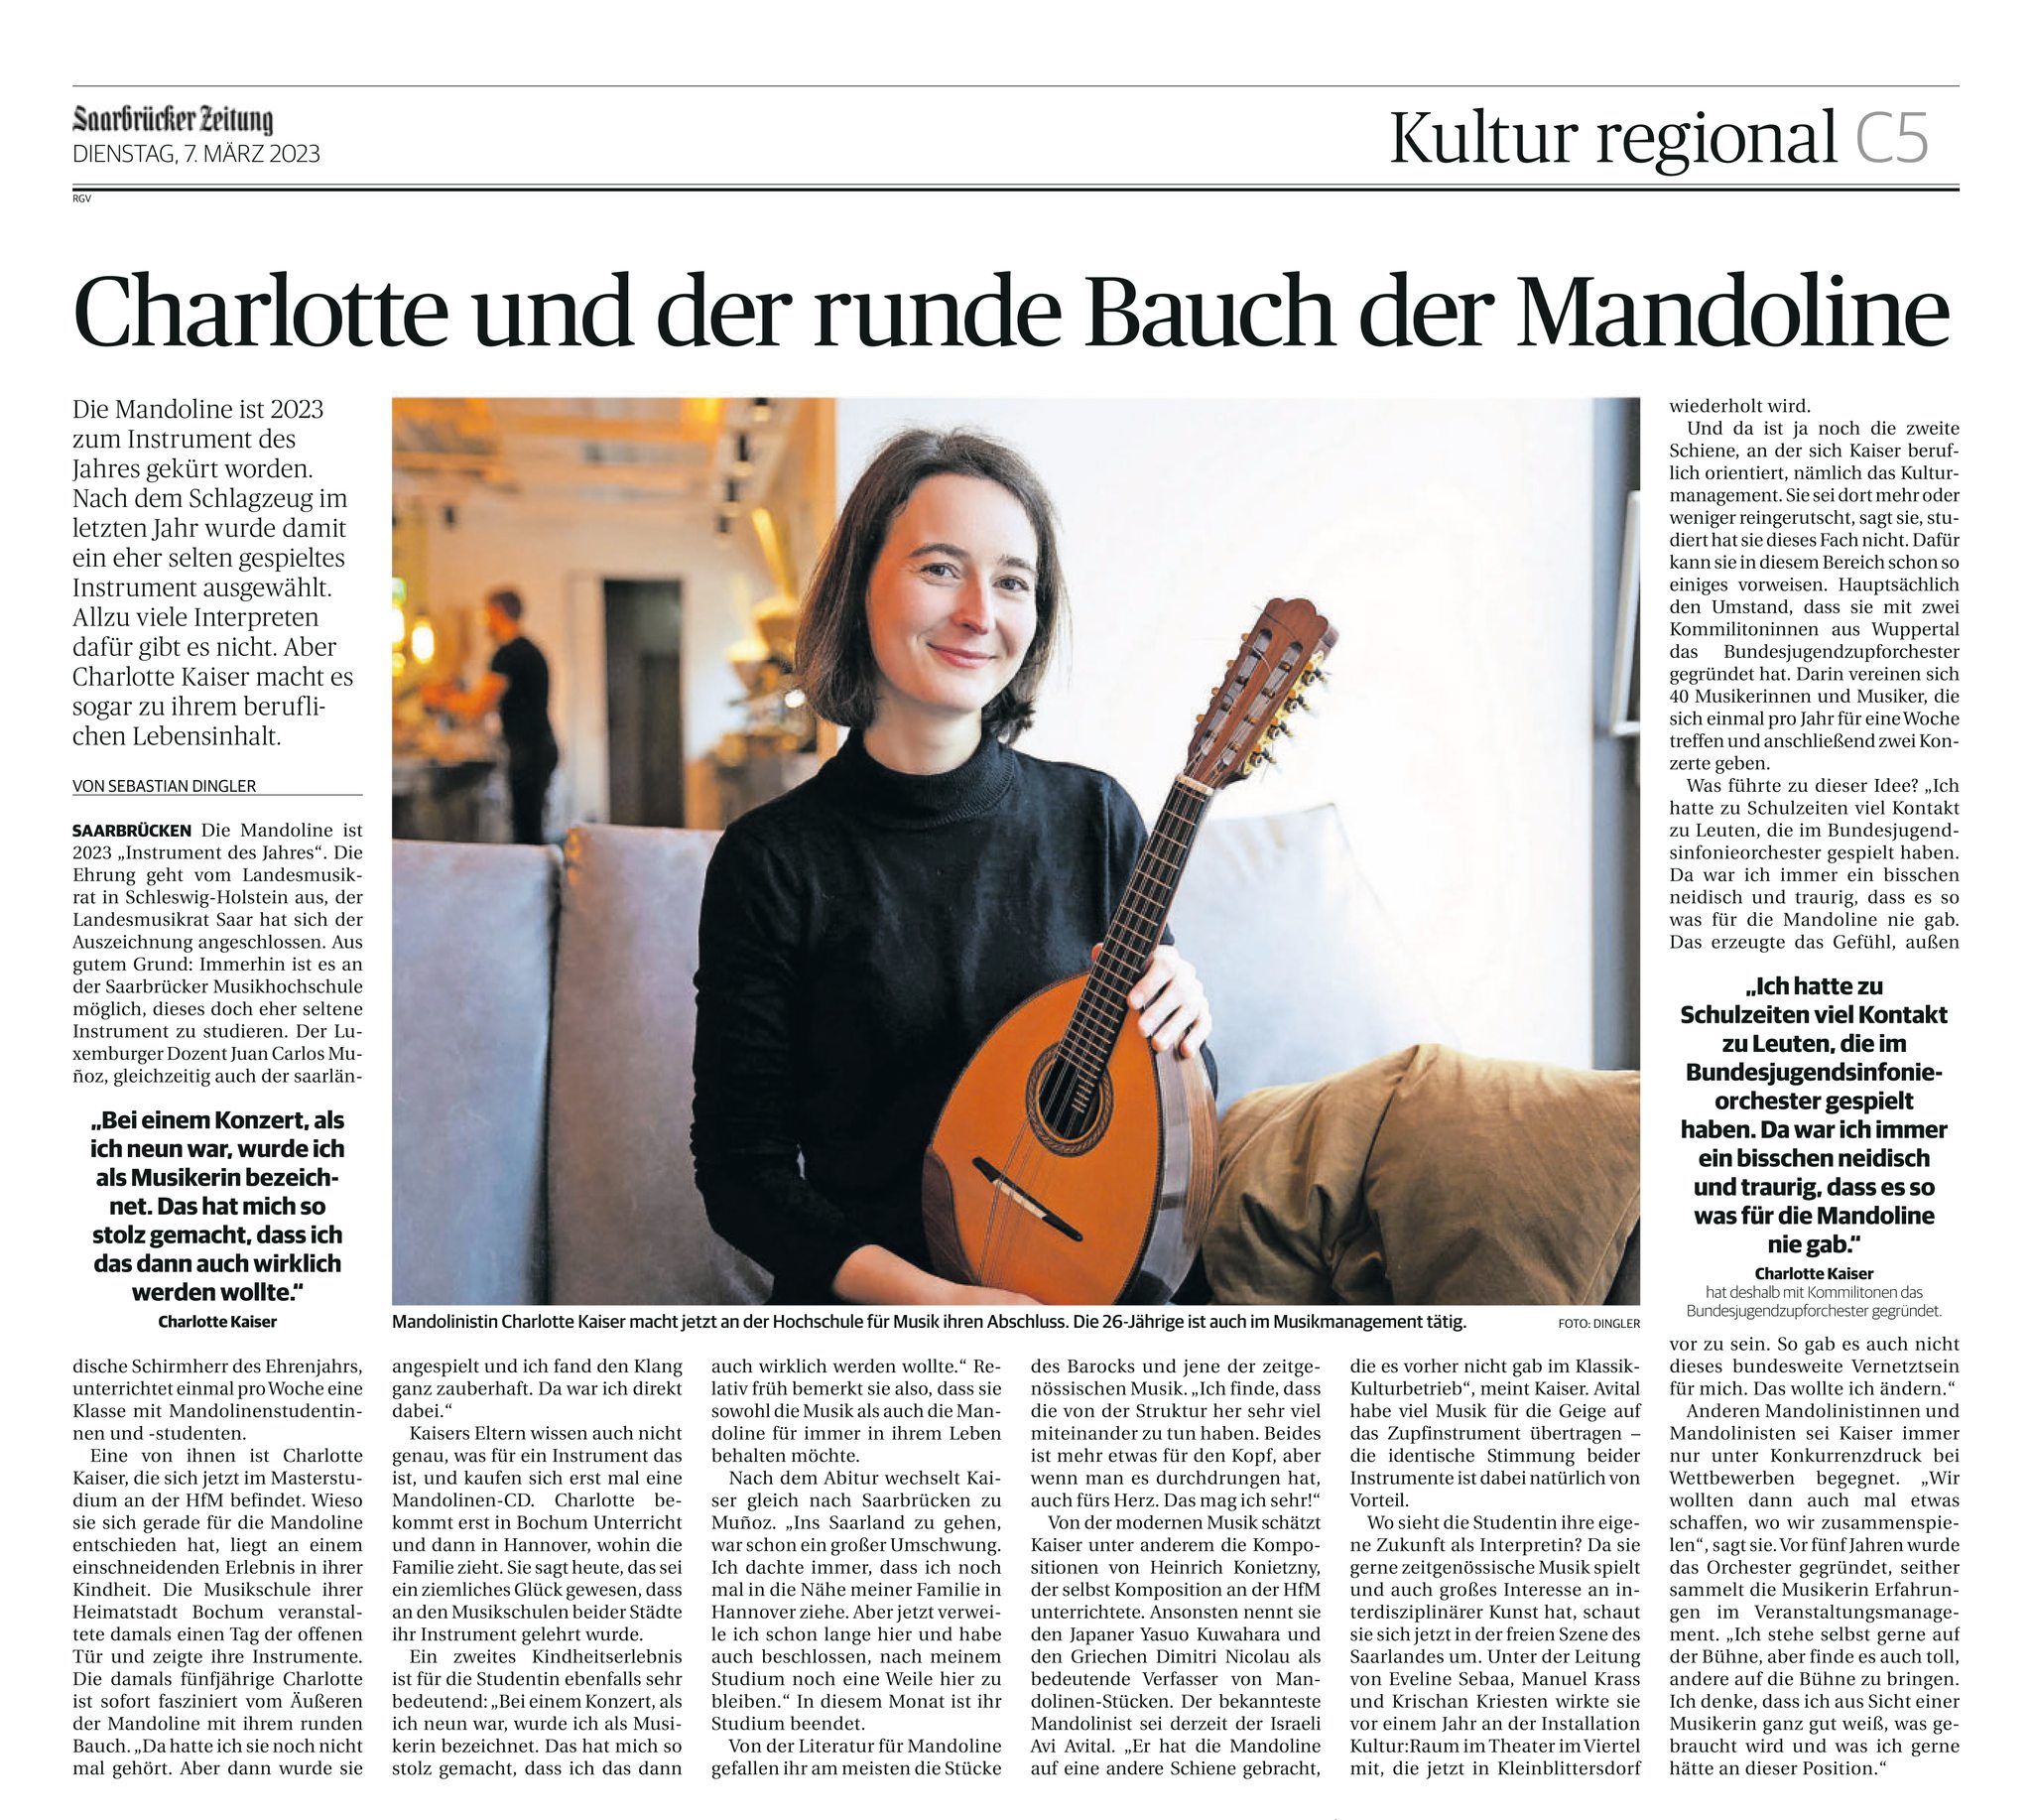 Charlotte und der runde Bauch der Manoline, Artikel in der Saarbrücker Zeitung vom 7. März 2023